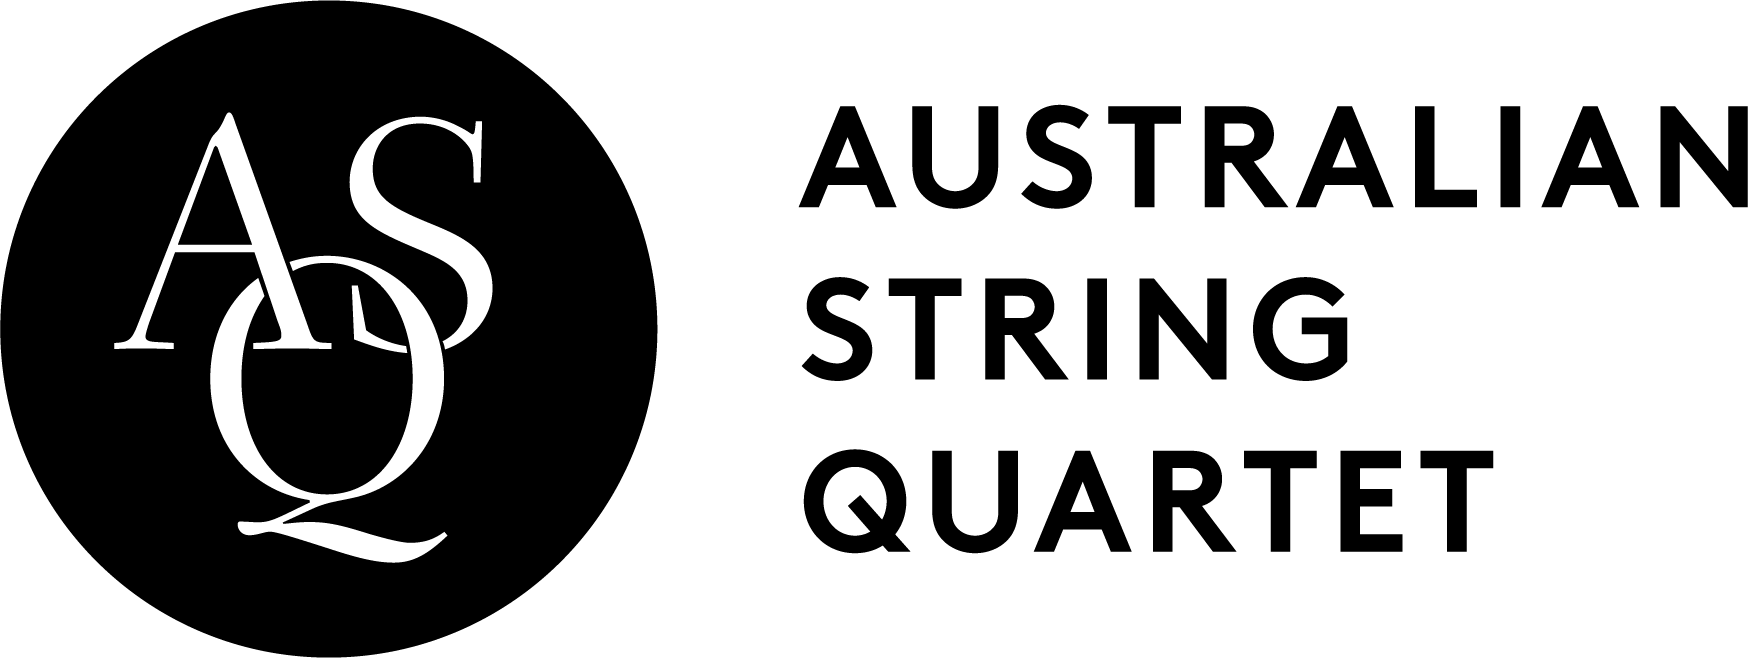 Australian String Quartet logo